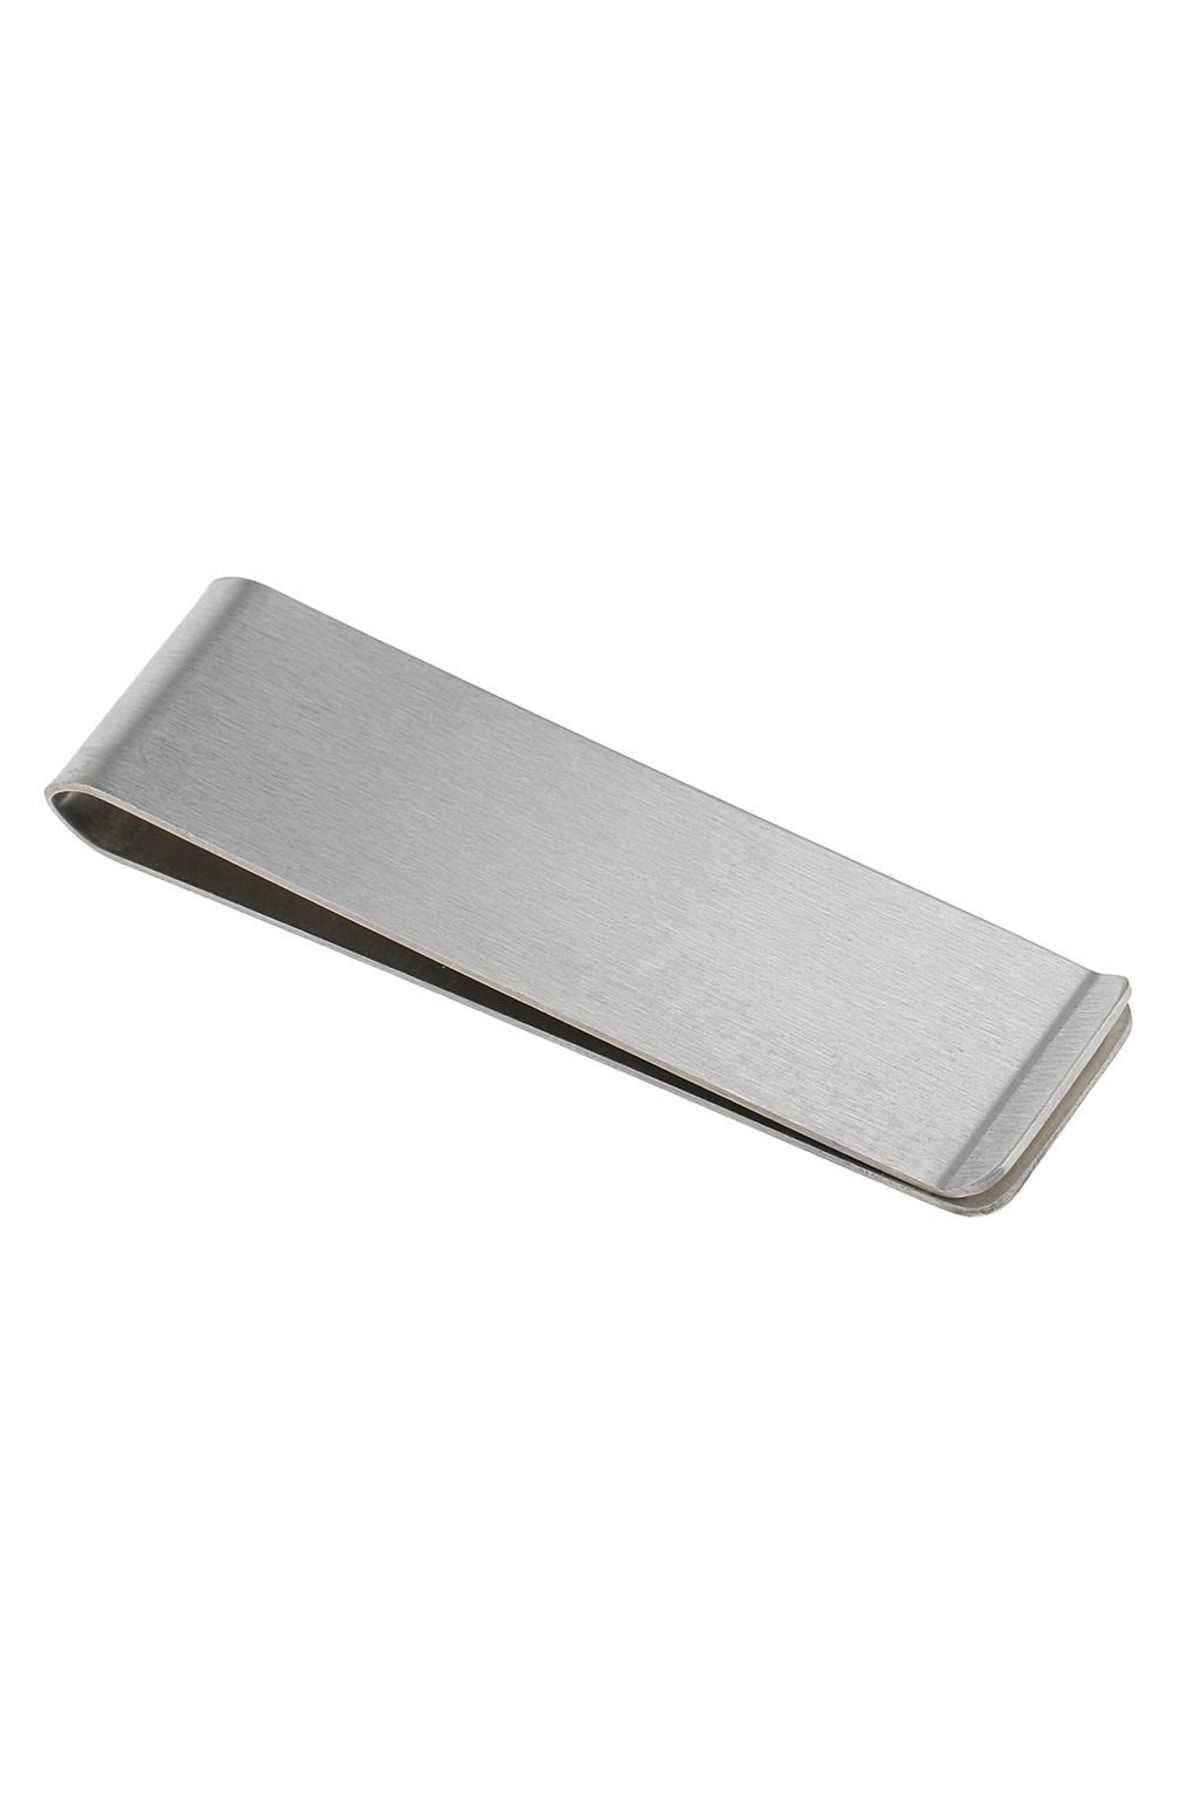 Spelt Metal Kağıt Para Tokası Kart Tutucu Klips Cüzdan Ataş Gümüş 70 Mm X 20 Mm